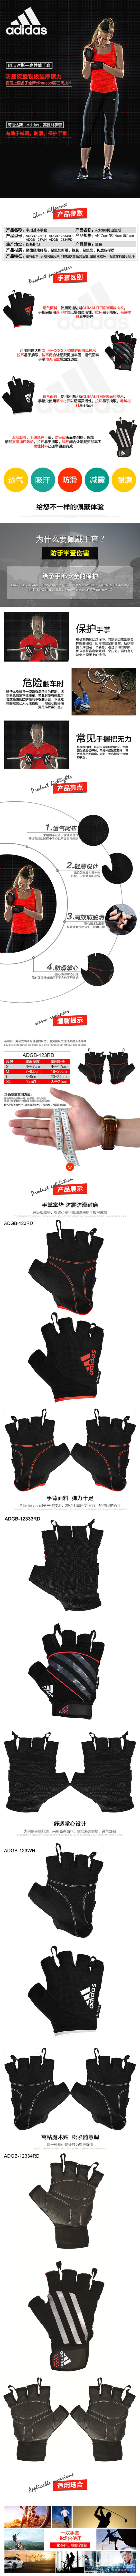 淘宝美工勇二Adidas阿迪达斯健身手套男女士透气防滑举重运动半指训练器械手套作品